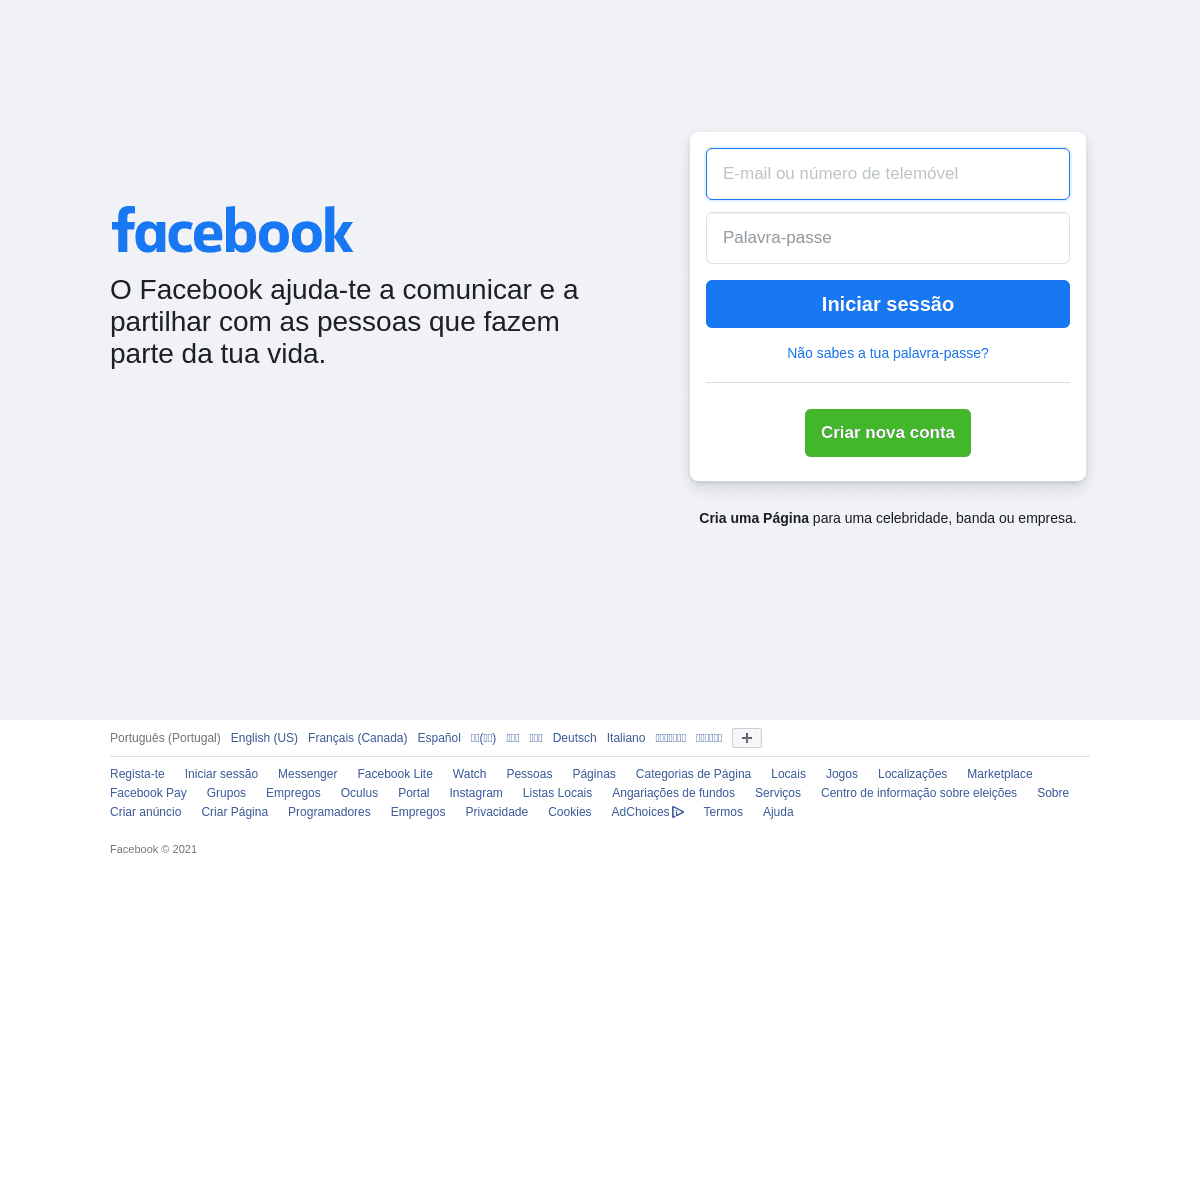 A complete backup of https://pt-pt.facebook.com